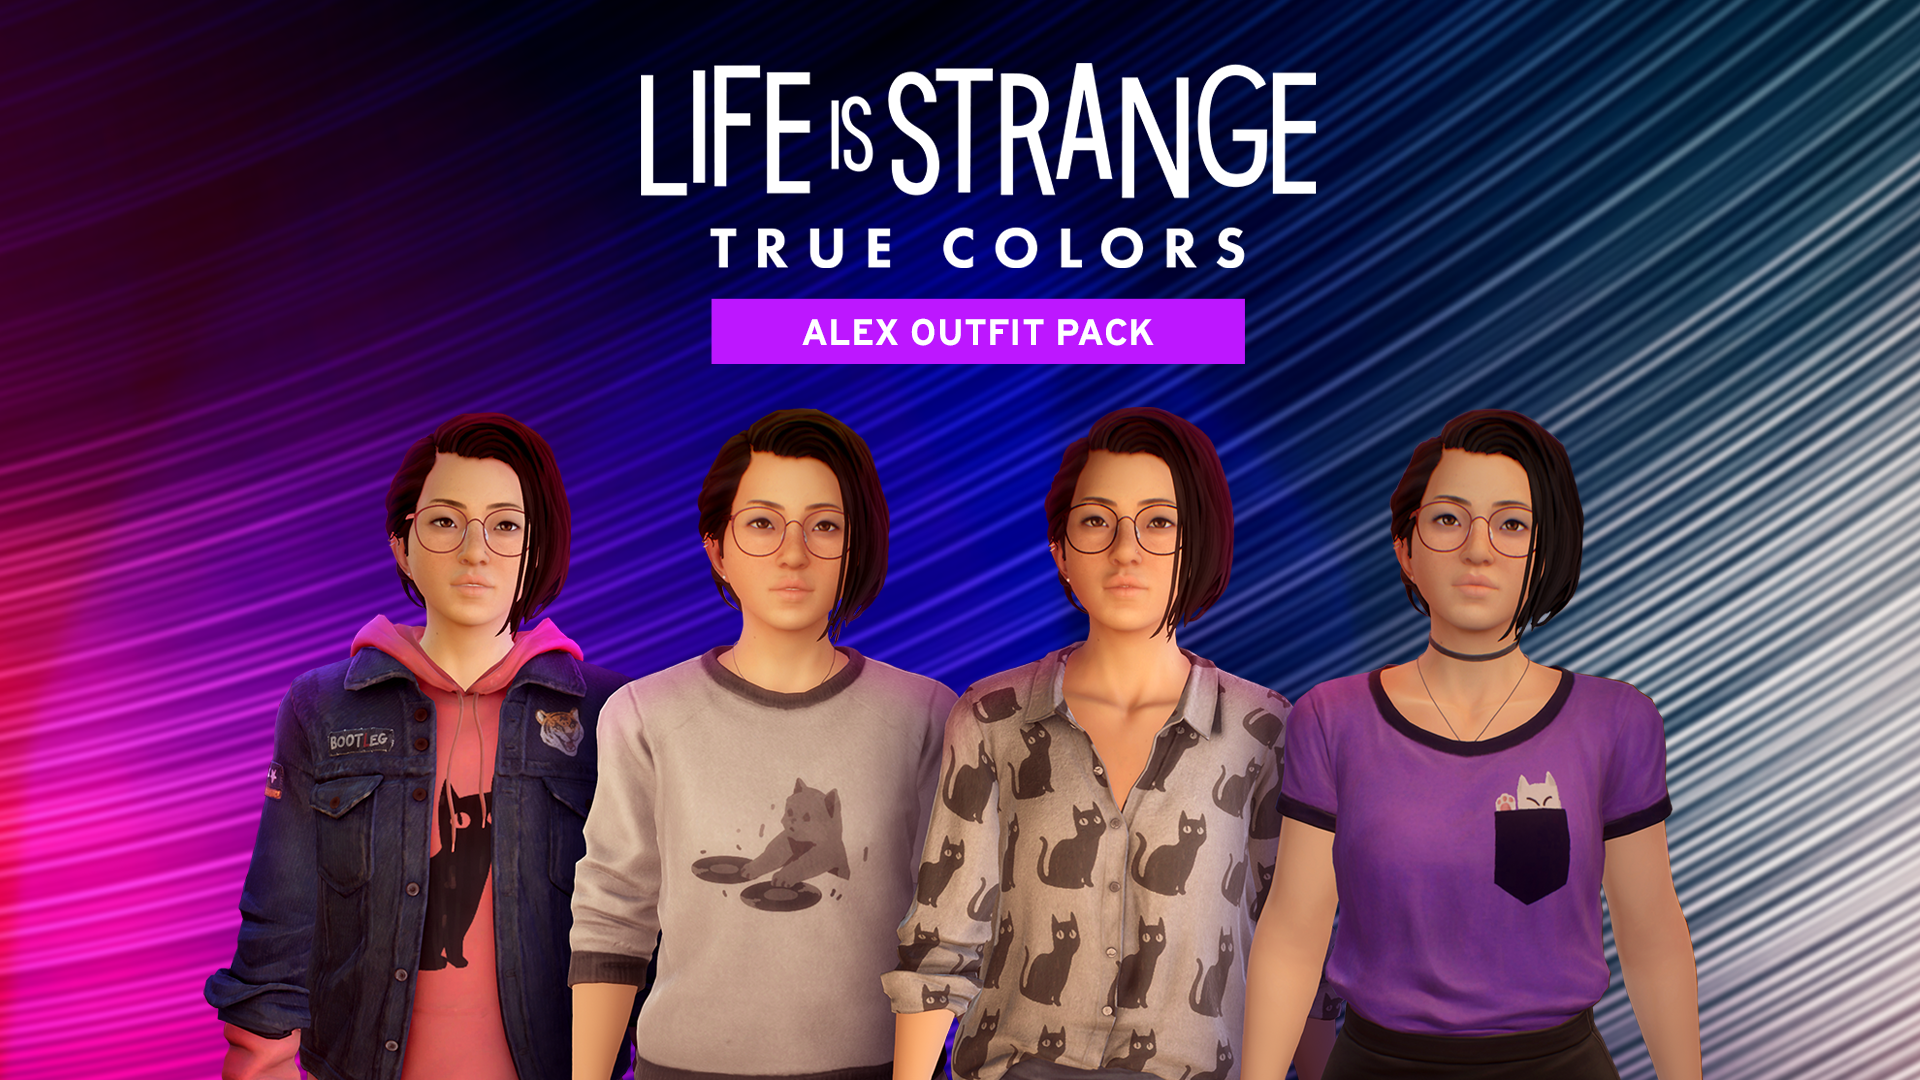 Life Is Strange: True Colors (Xbox XS)